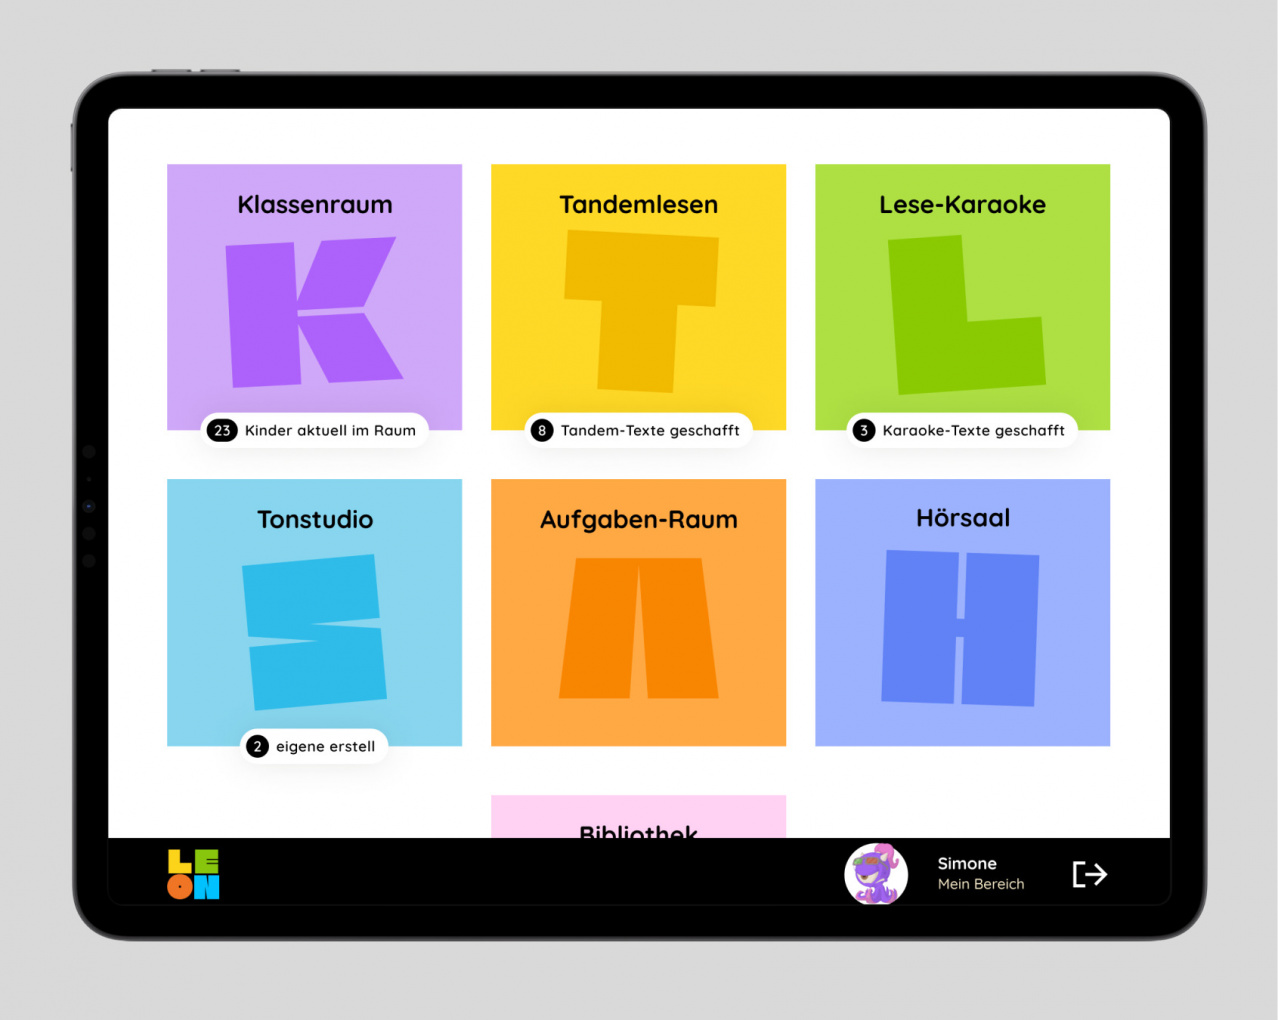 Dashboard dere Anwendung LEON zum Lesen lernen auf einem Tablet